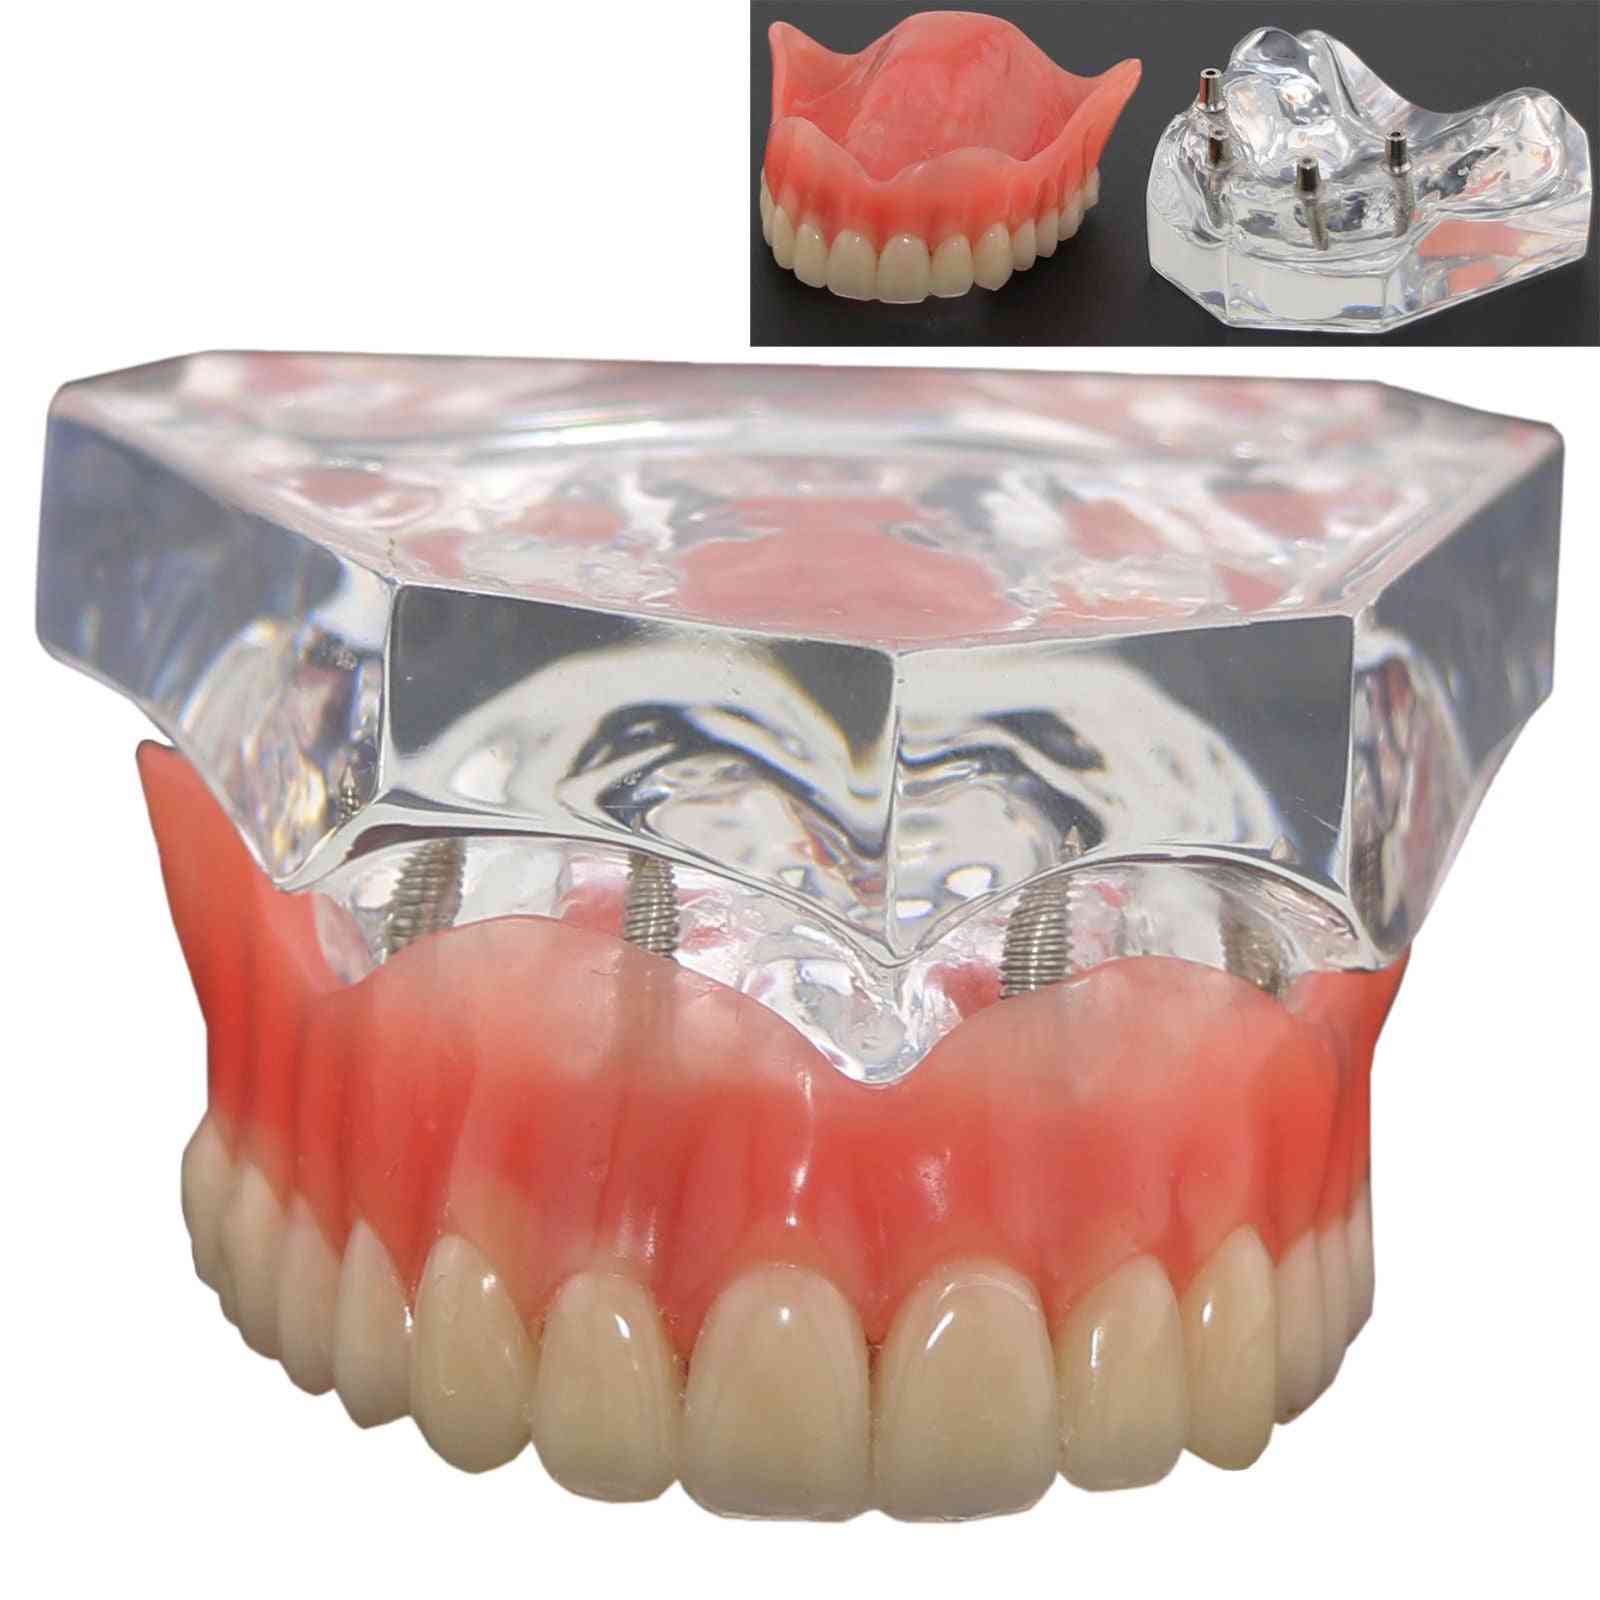 1 pieza sobredentadura superior dental modelo de demostración superior de 4 implantes, modelo de dientes